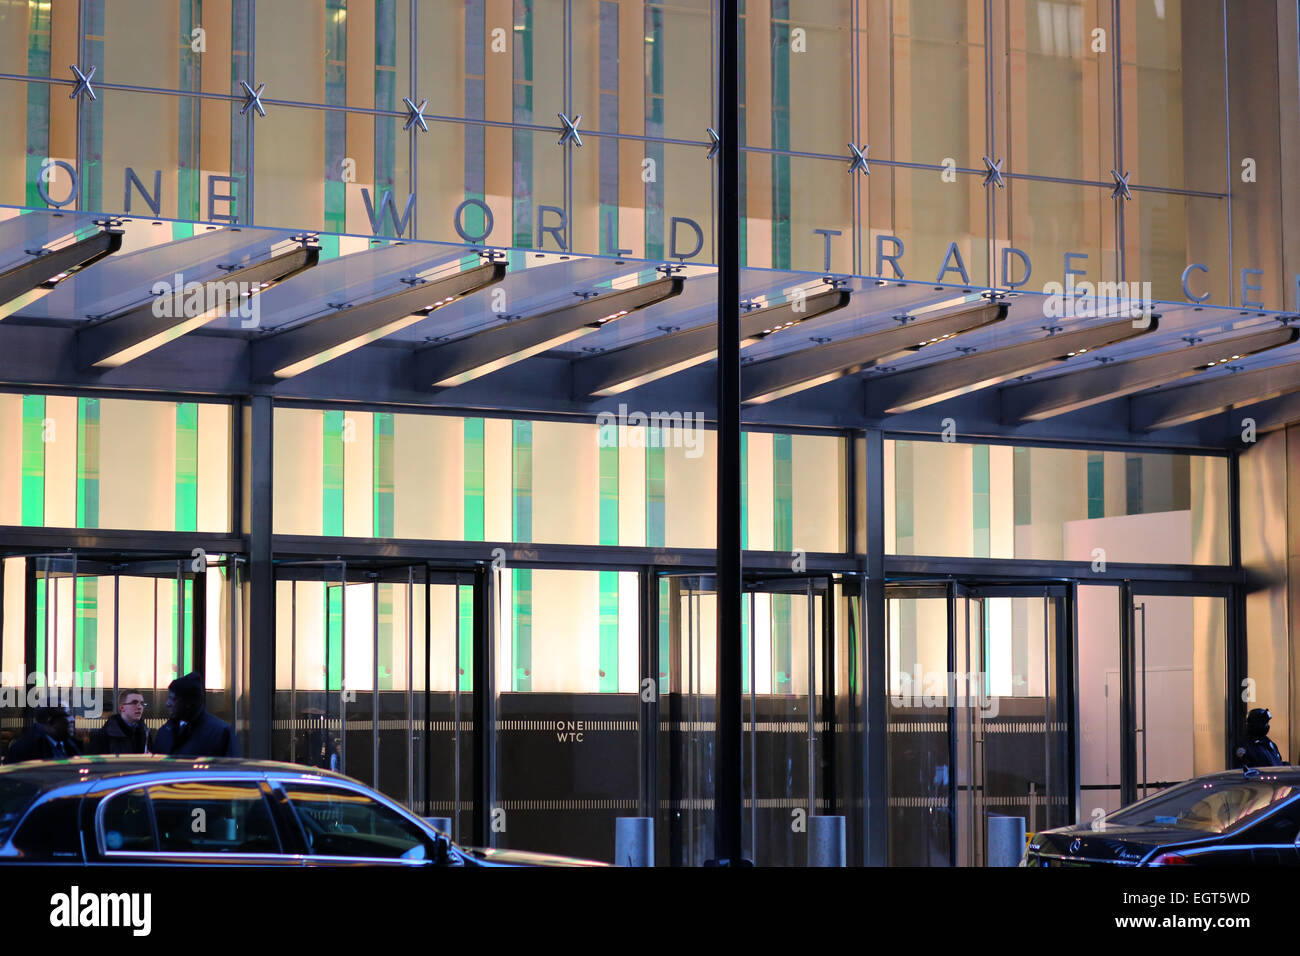 one world trade center entrance, New York, NY. Stock Photo